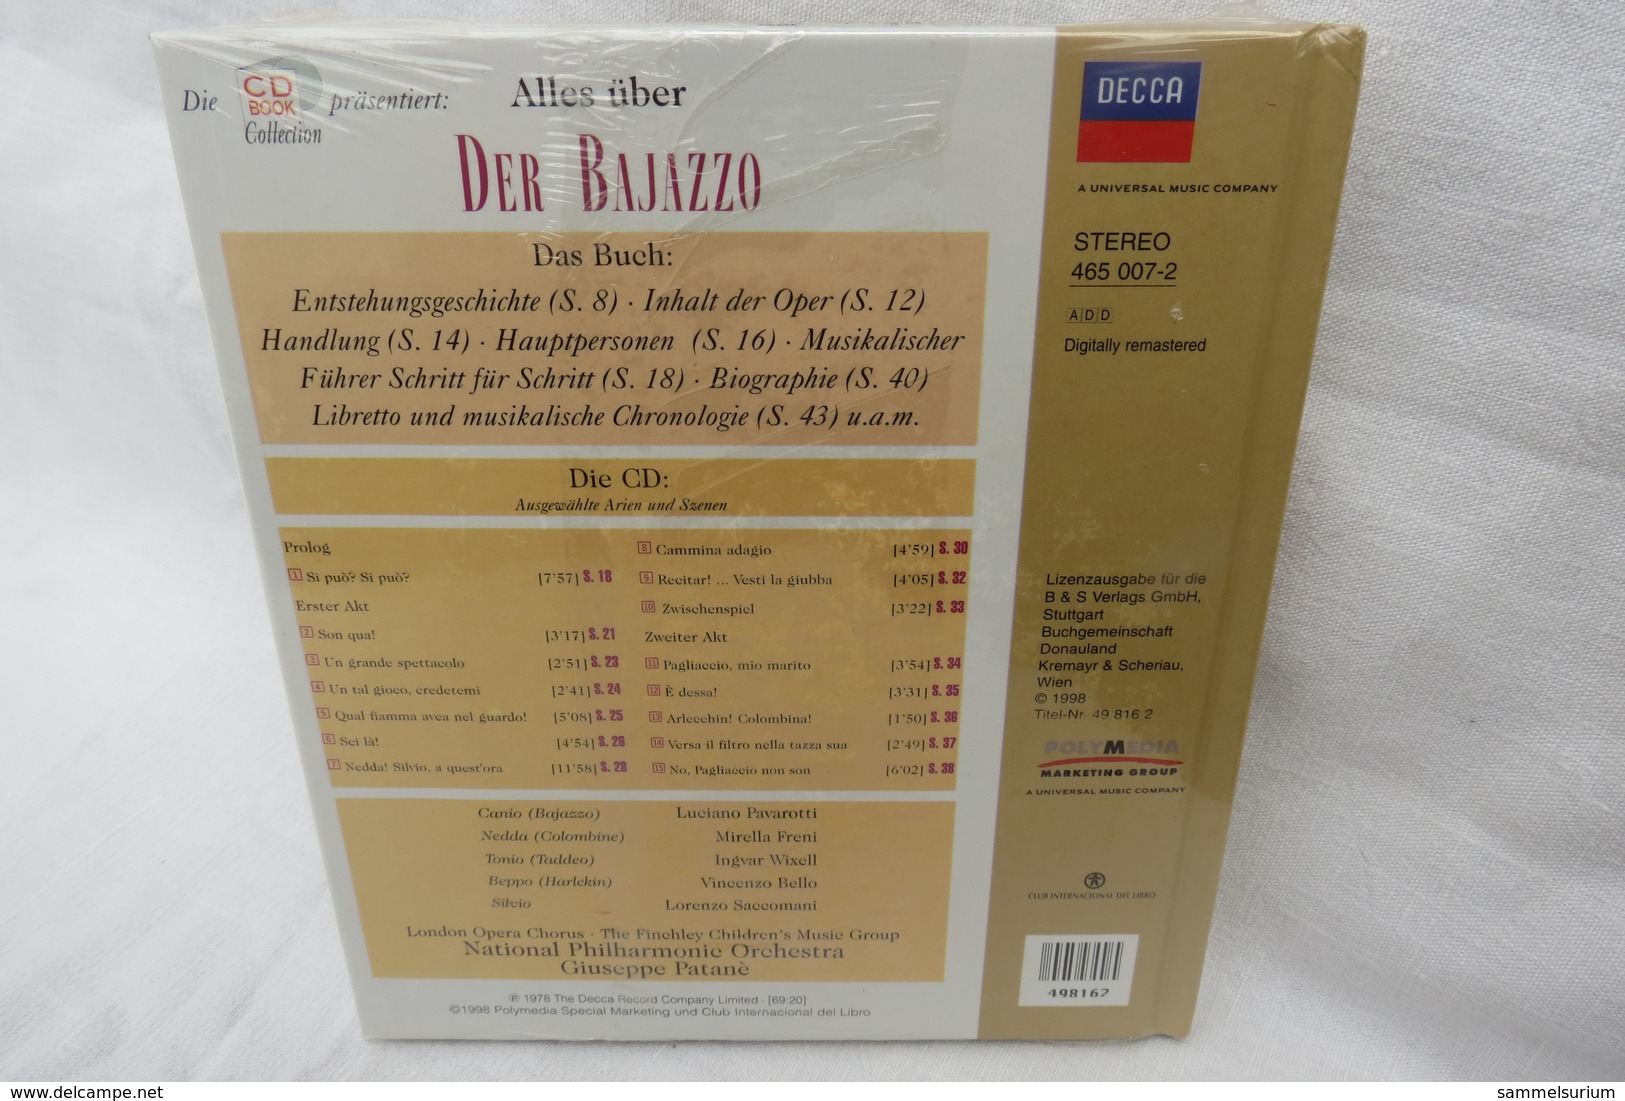 CD "Der Bajazzo / Ruggero Leoncavallo" Mit Buch Aus Der CD Book Collection (ungeöffnet, Original Eingeschweißt) - Opera / Operette